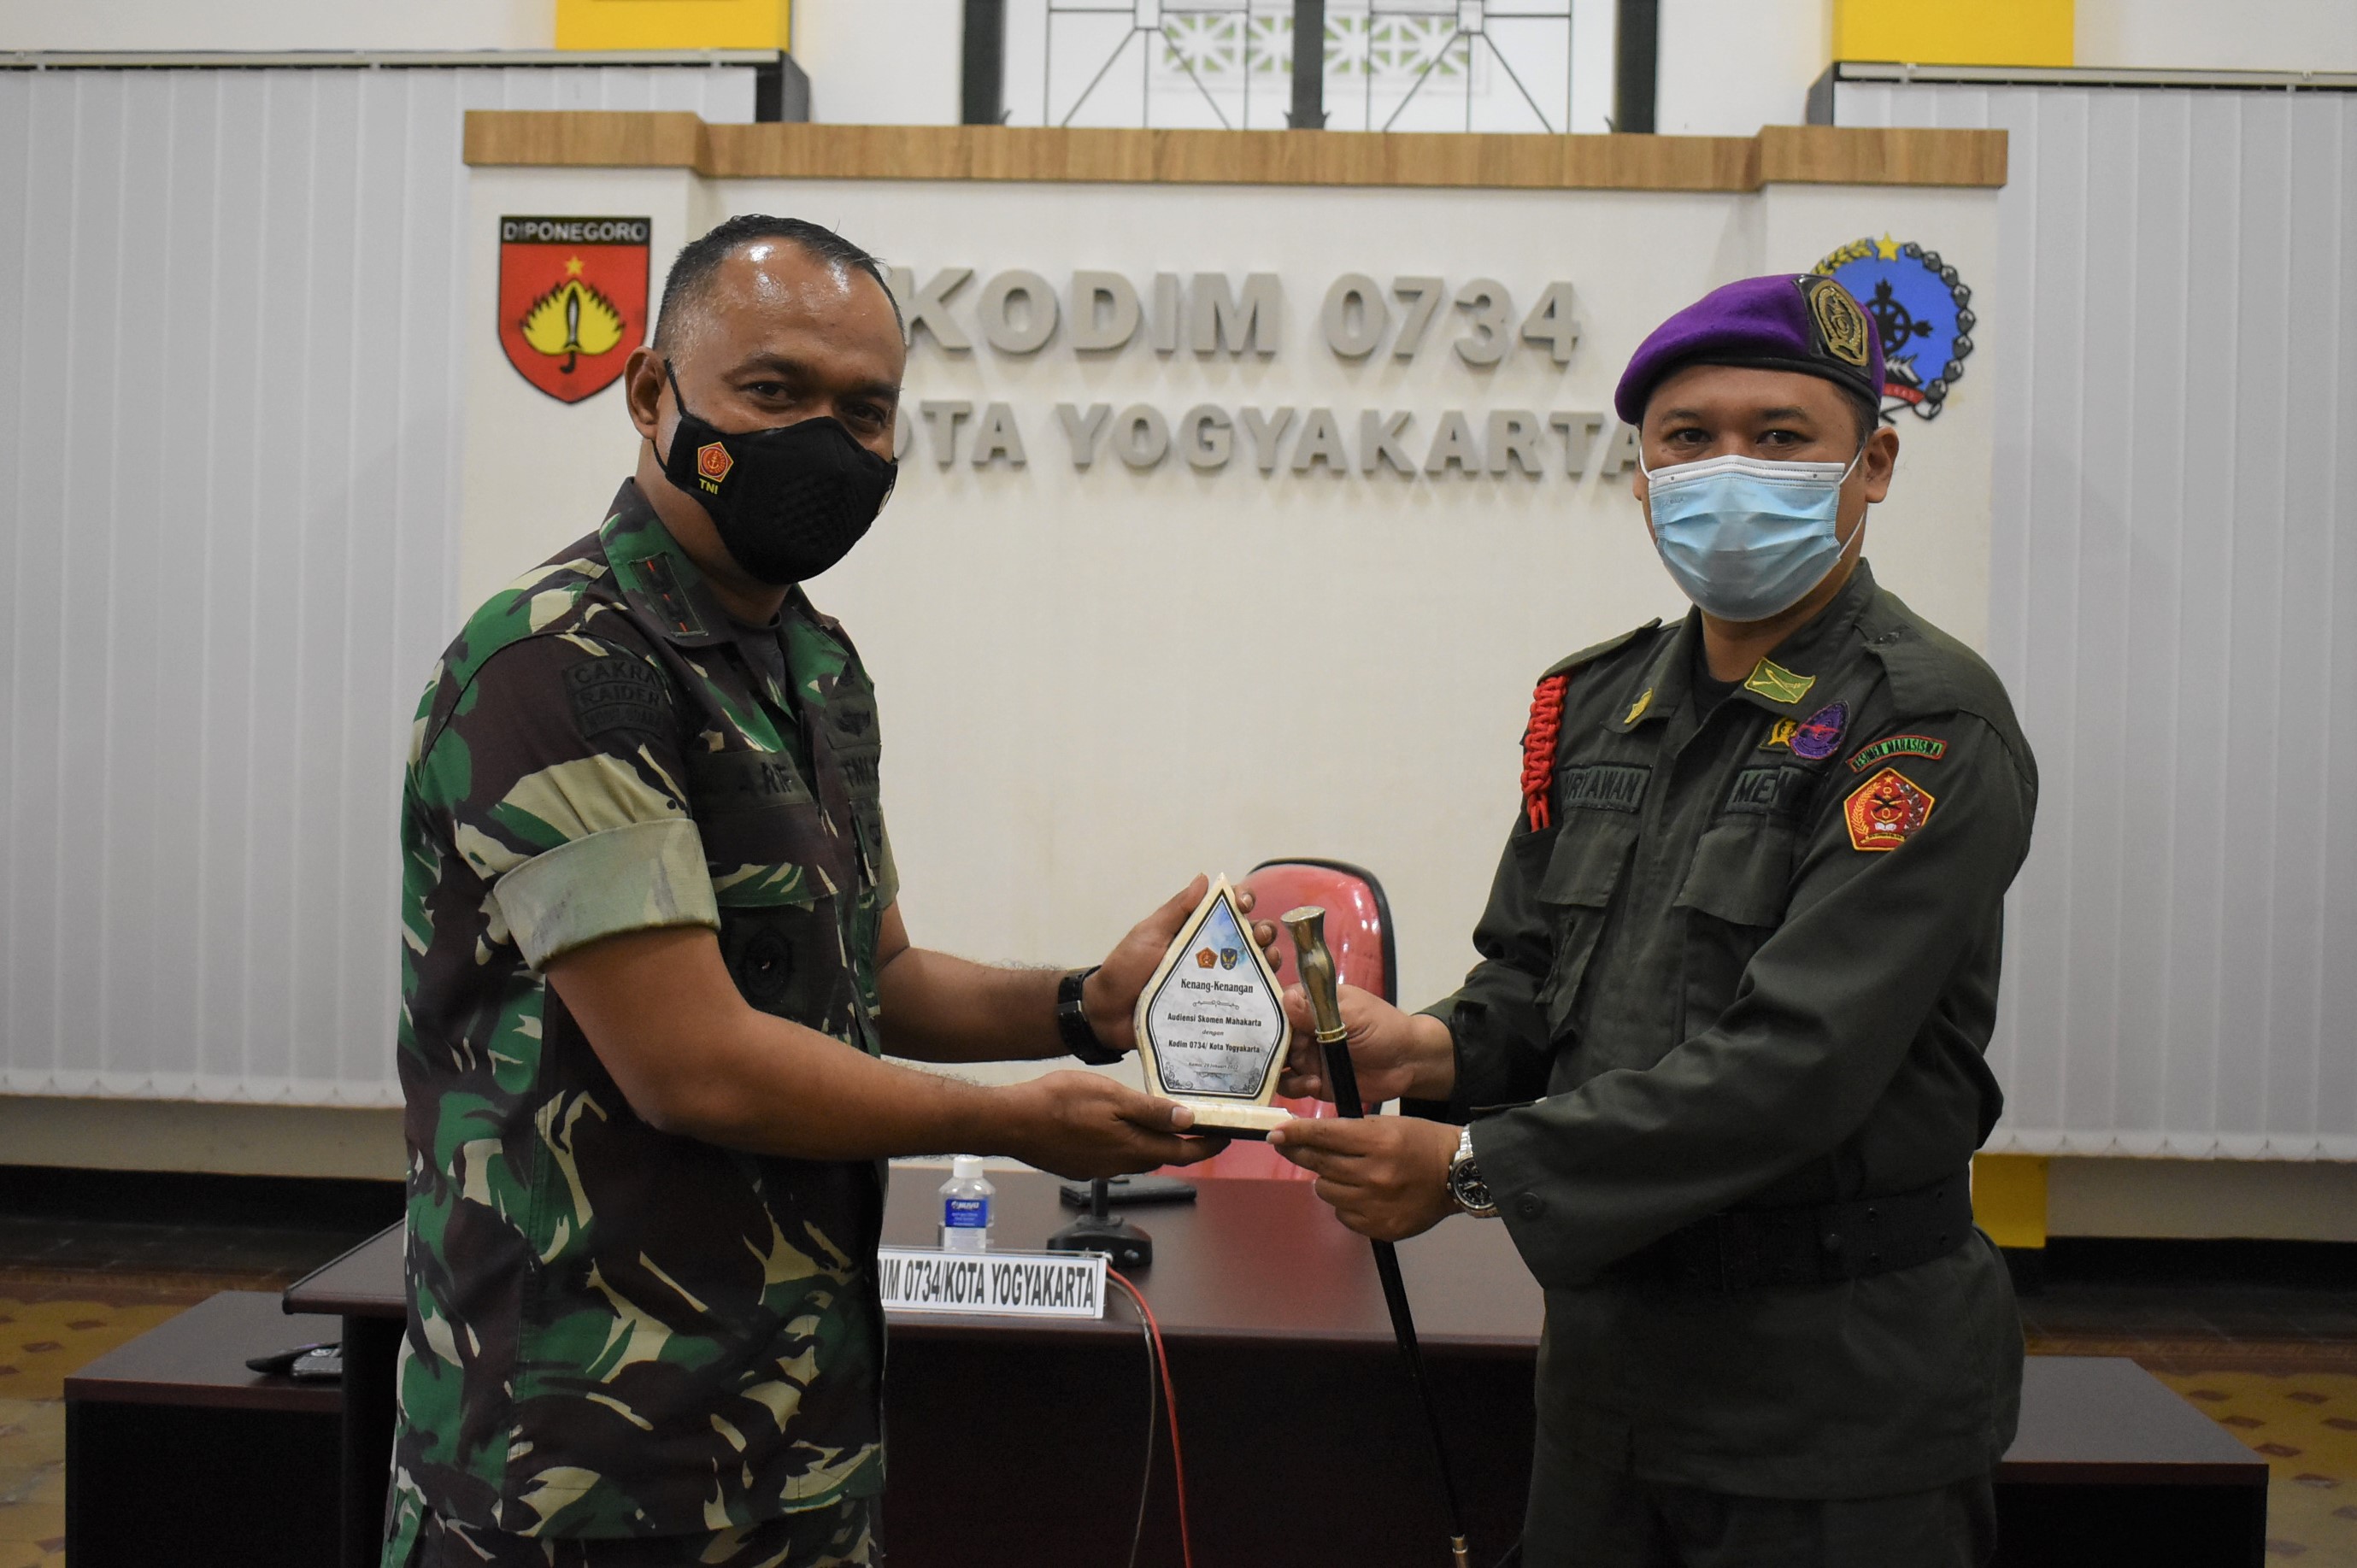 Dandim 0734/Kota Yogyakarta Terima Audiensi Komando Resimen Mahasiswa Mahakarta